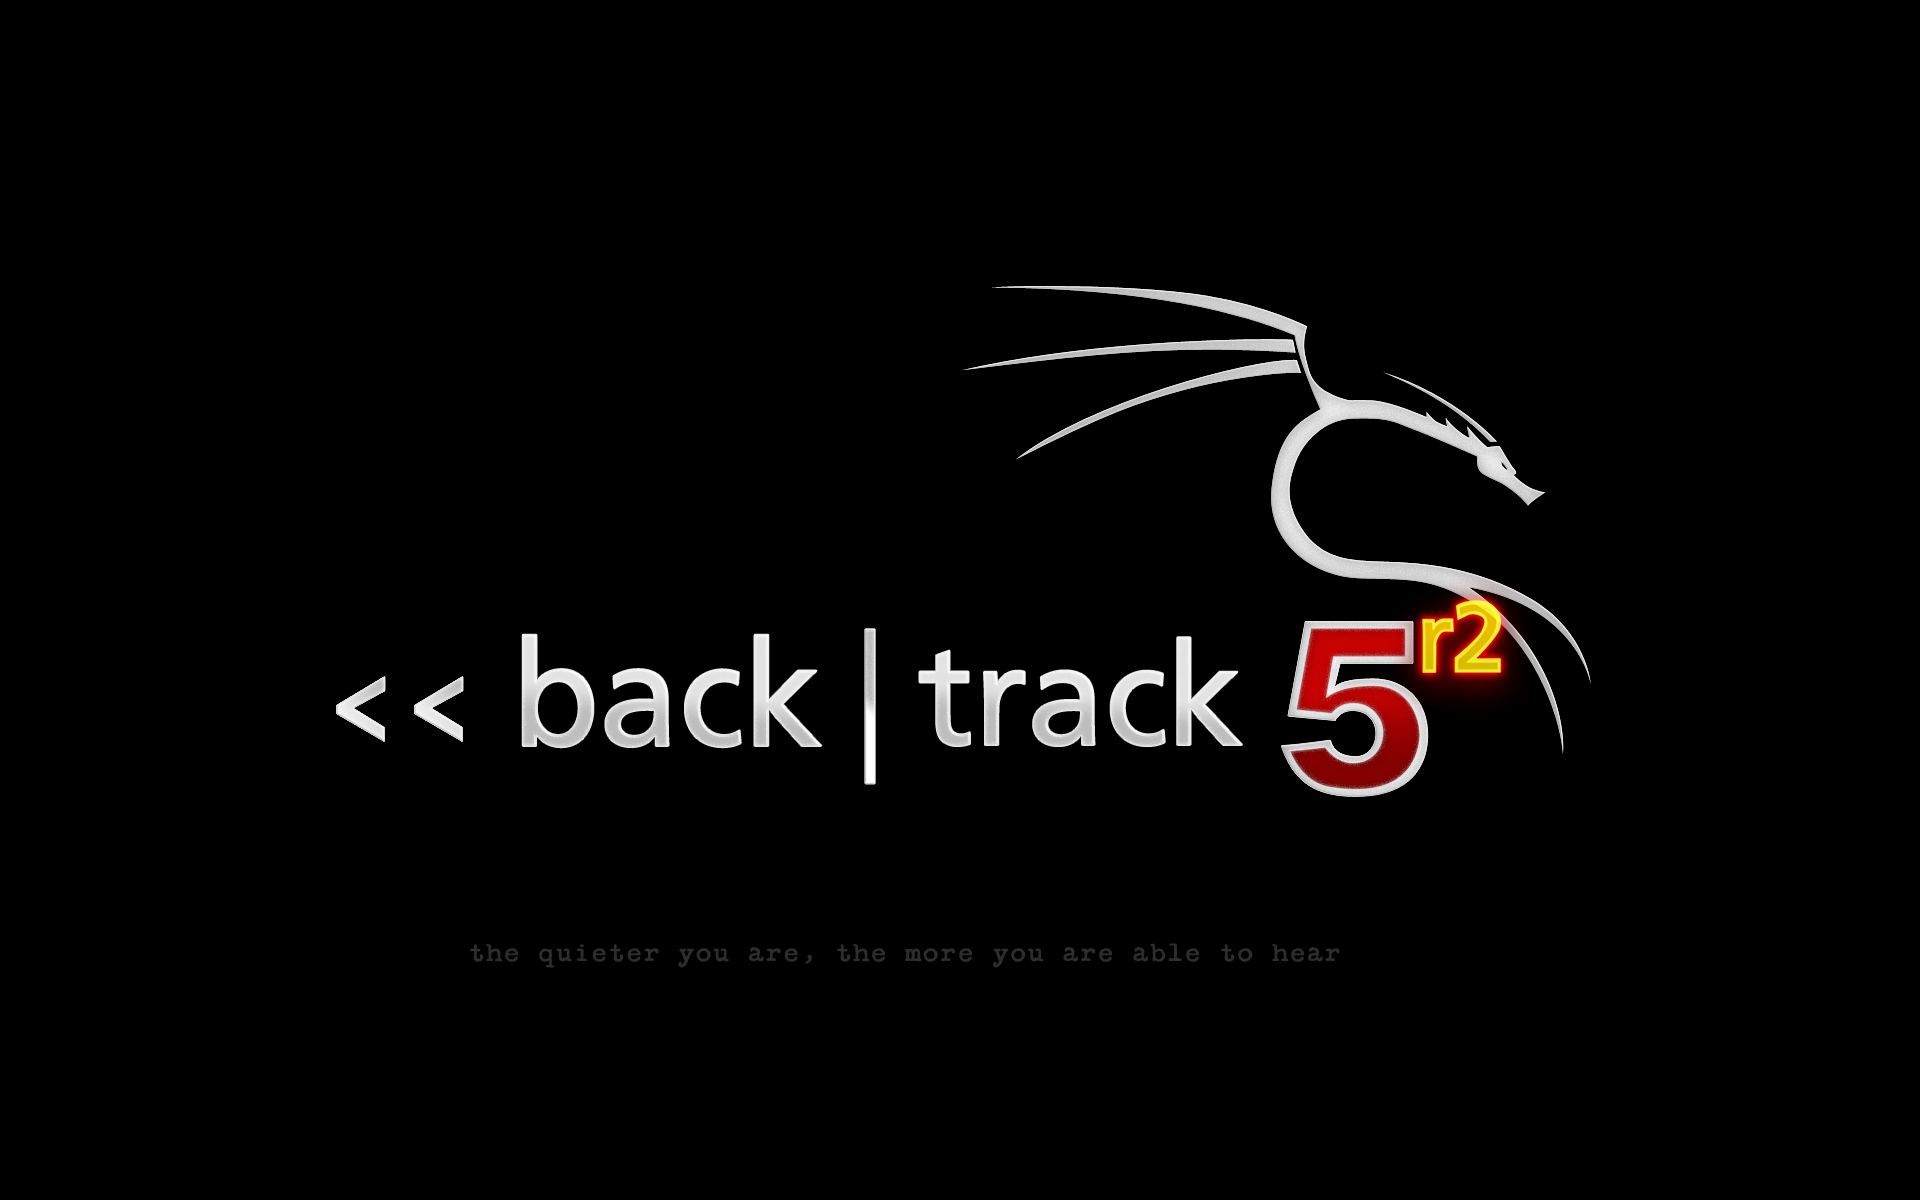 backtrack-5r2-black.png